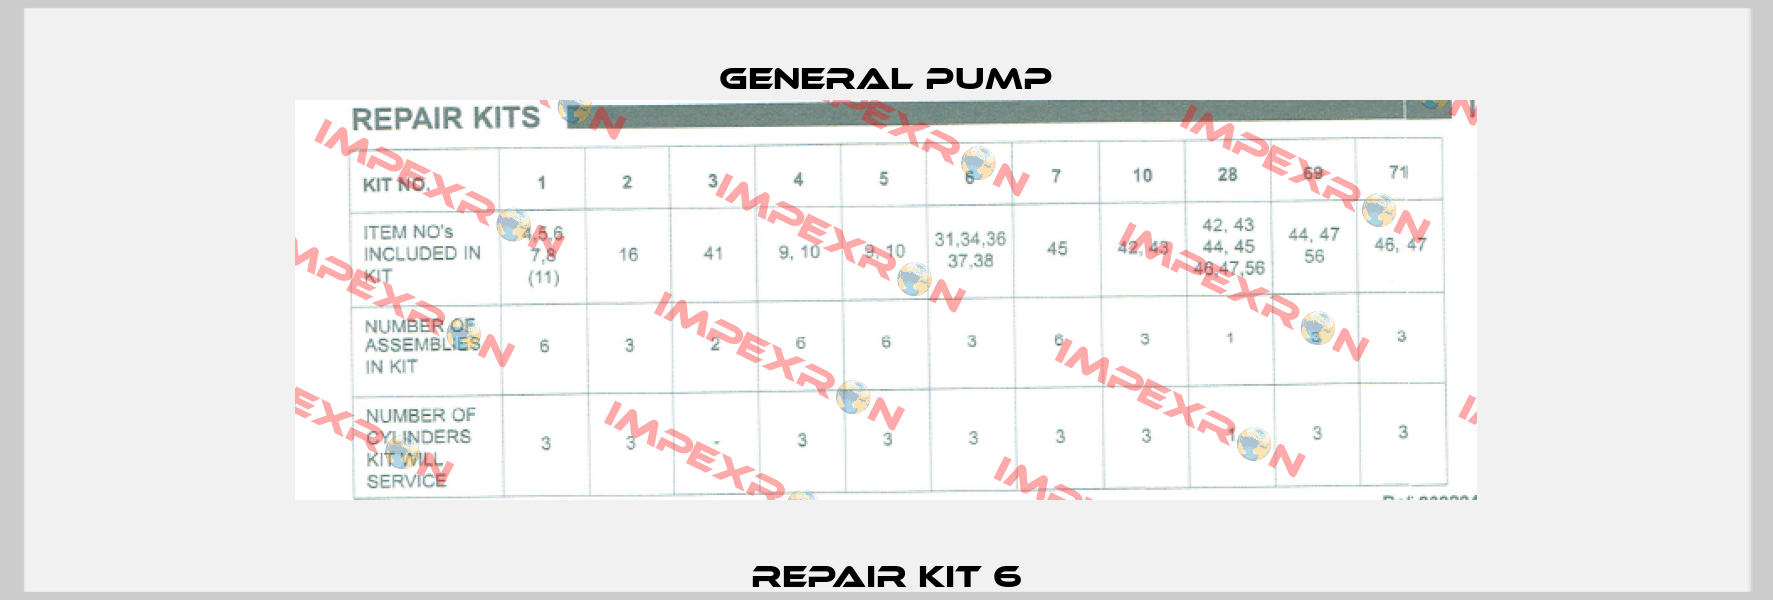 Repair Kit 6 General Pump